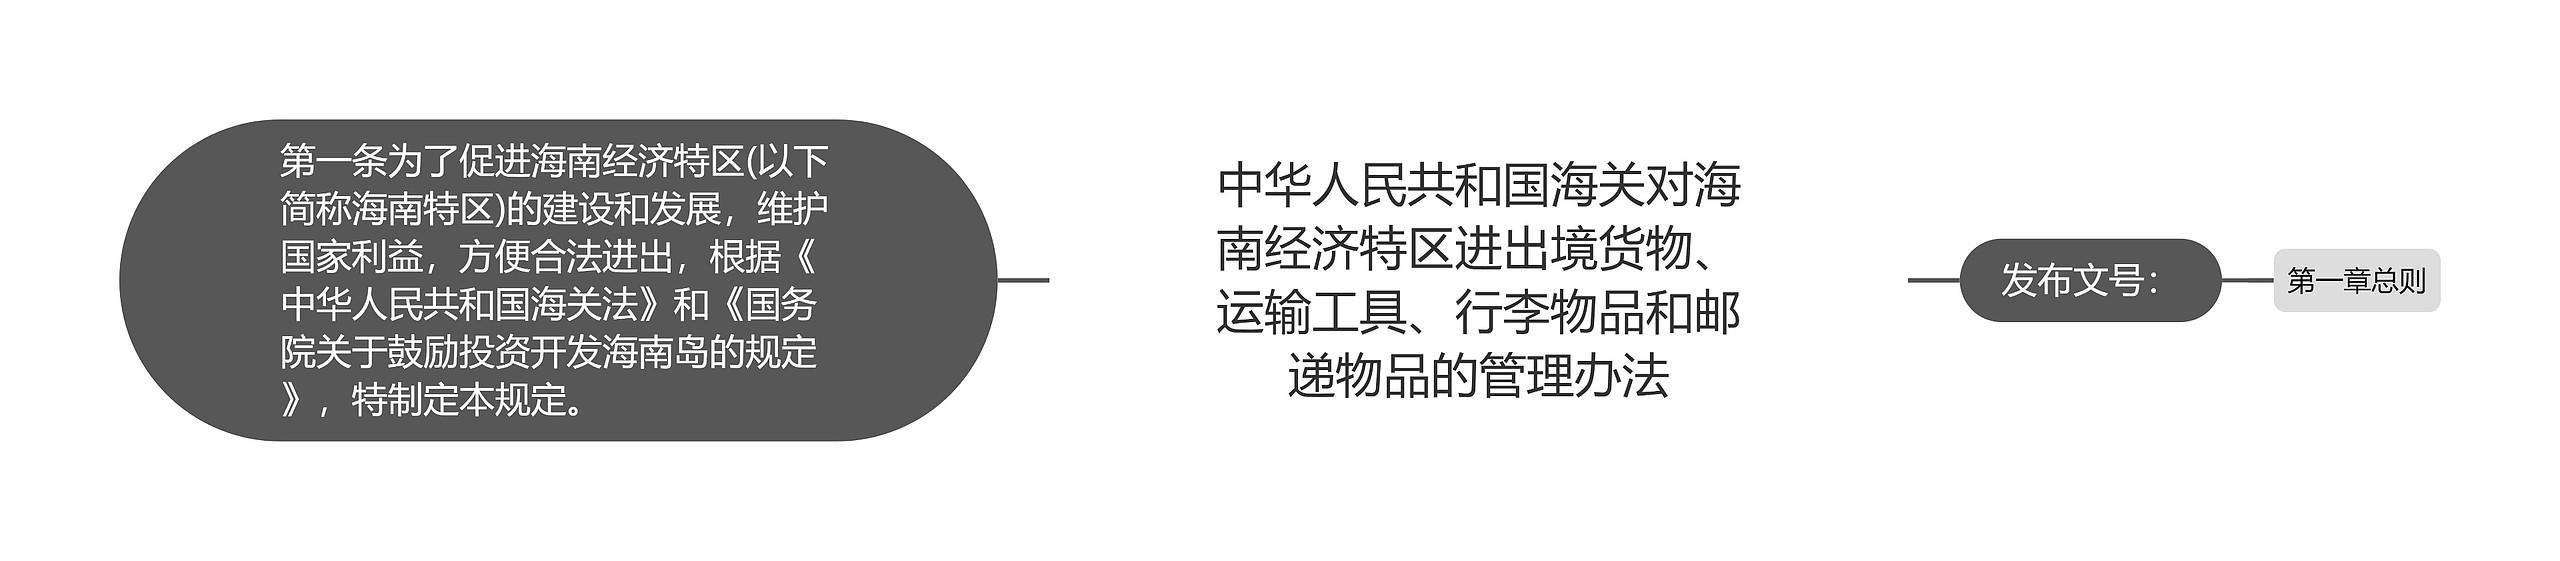 中华人民共和国海关对海南经济特区进出境货物、运输工具、行李物品和邮递物品的管理办法